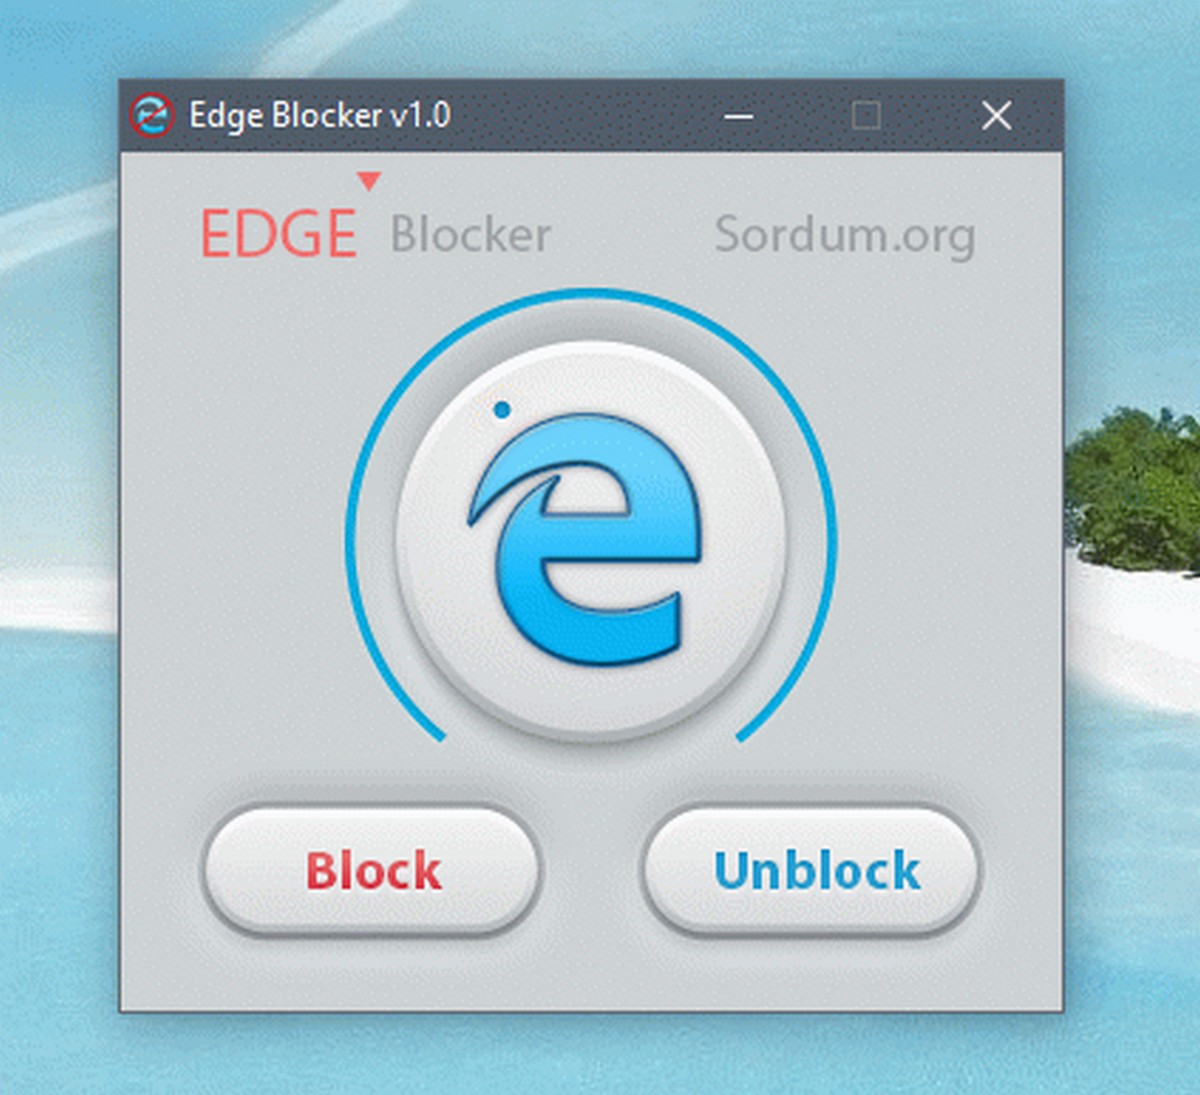 Edge Blocker for Windows 10